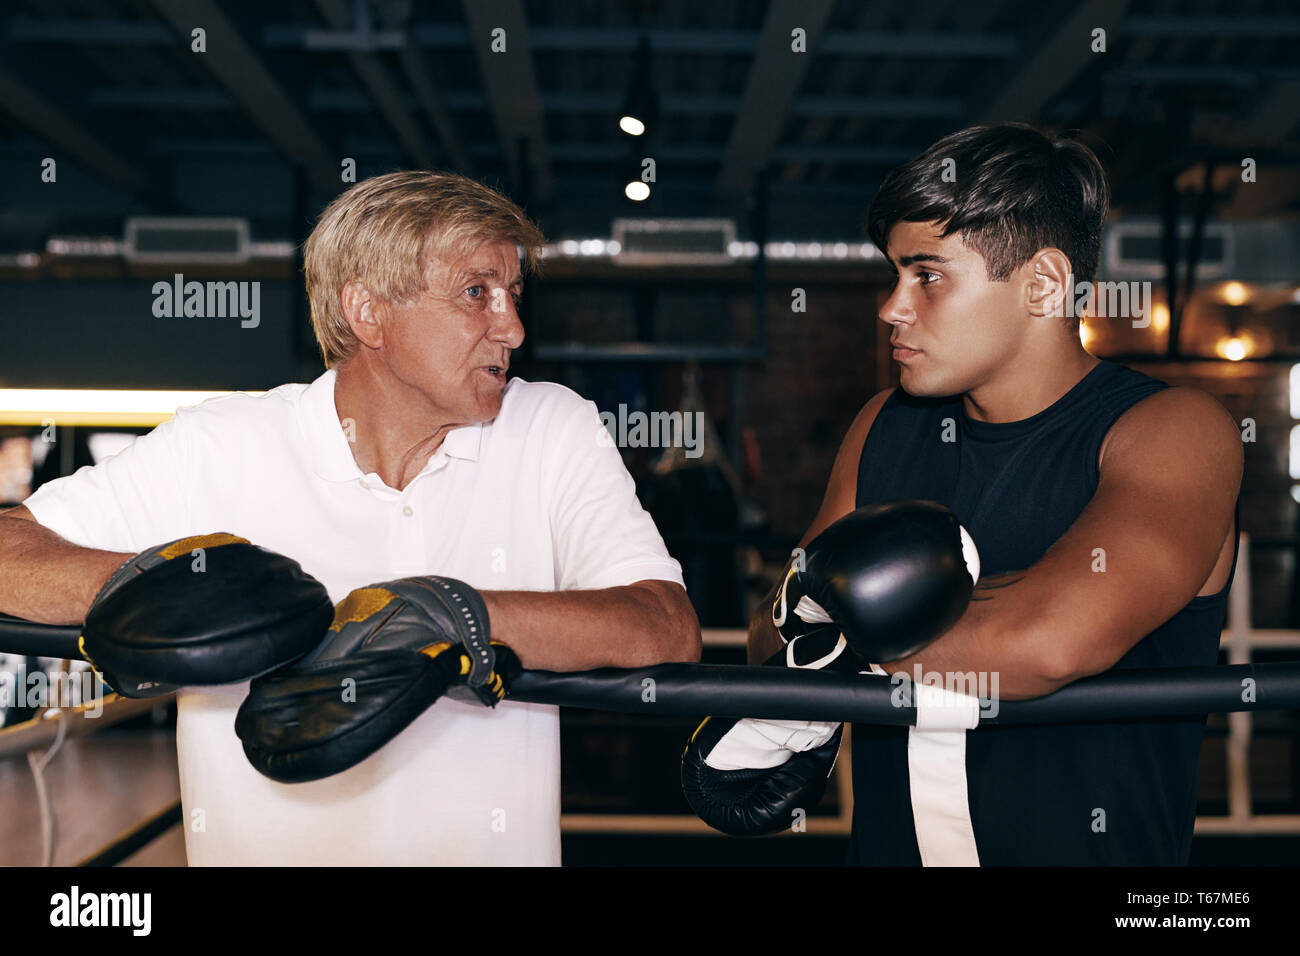 Junge boxer Hören seines reifen Trainer. Seitenansicht eines zwei Sport stehende Person in boxer Ring. Stockfoto